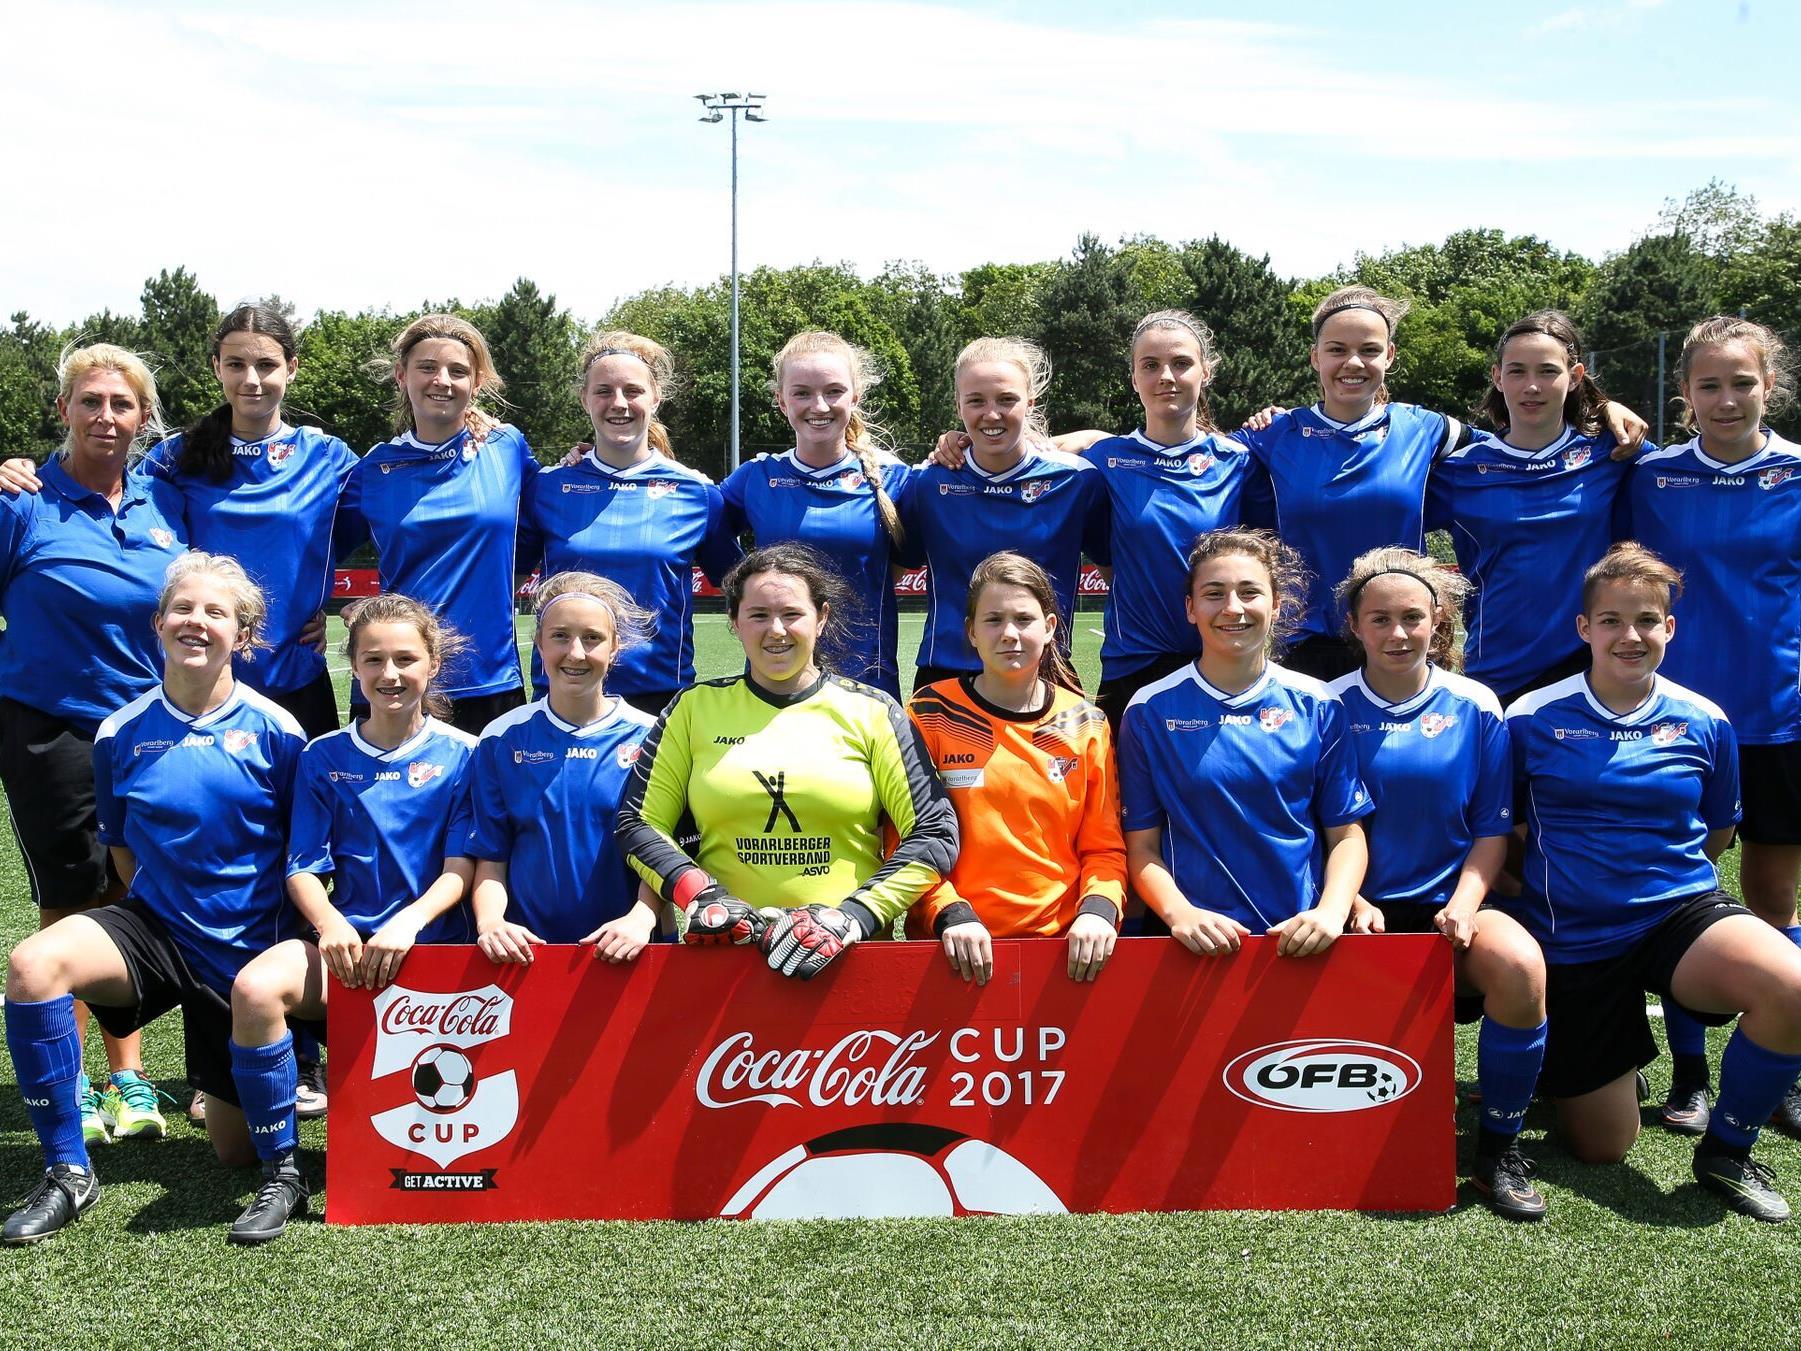 Knapp am dritten Titel vorbeigeschrammt - die Vorarlberg U16-Mädchenauswahl beeindruckte trotzdem beim Coca Cola Cup 2017.